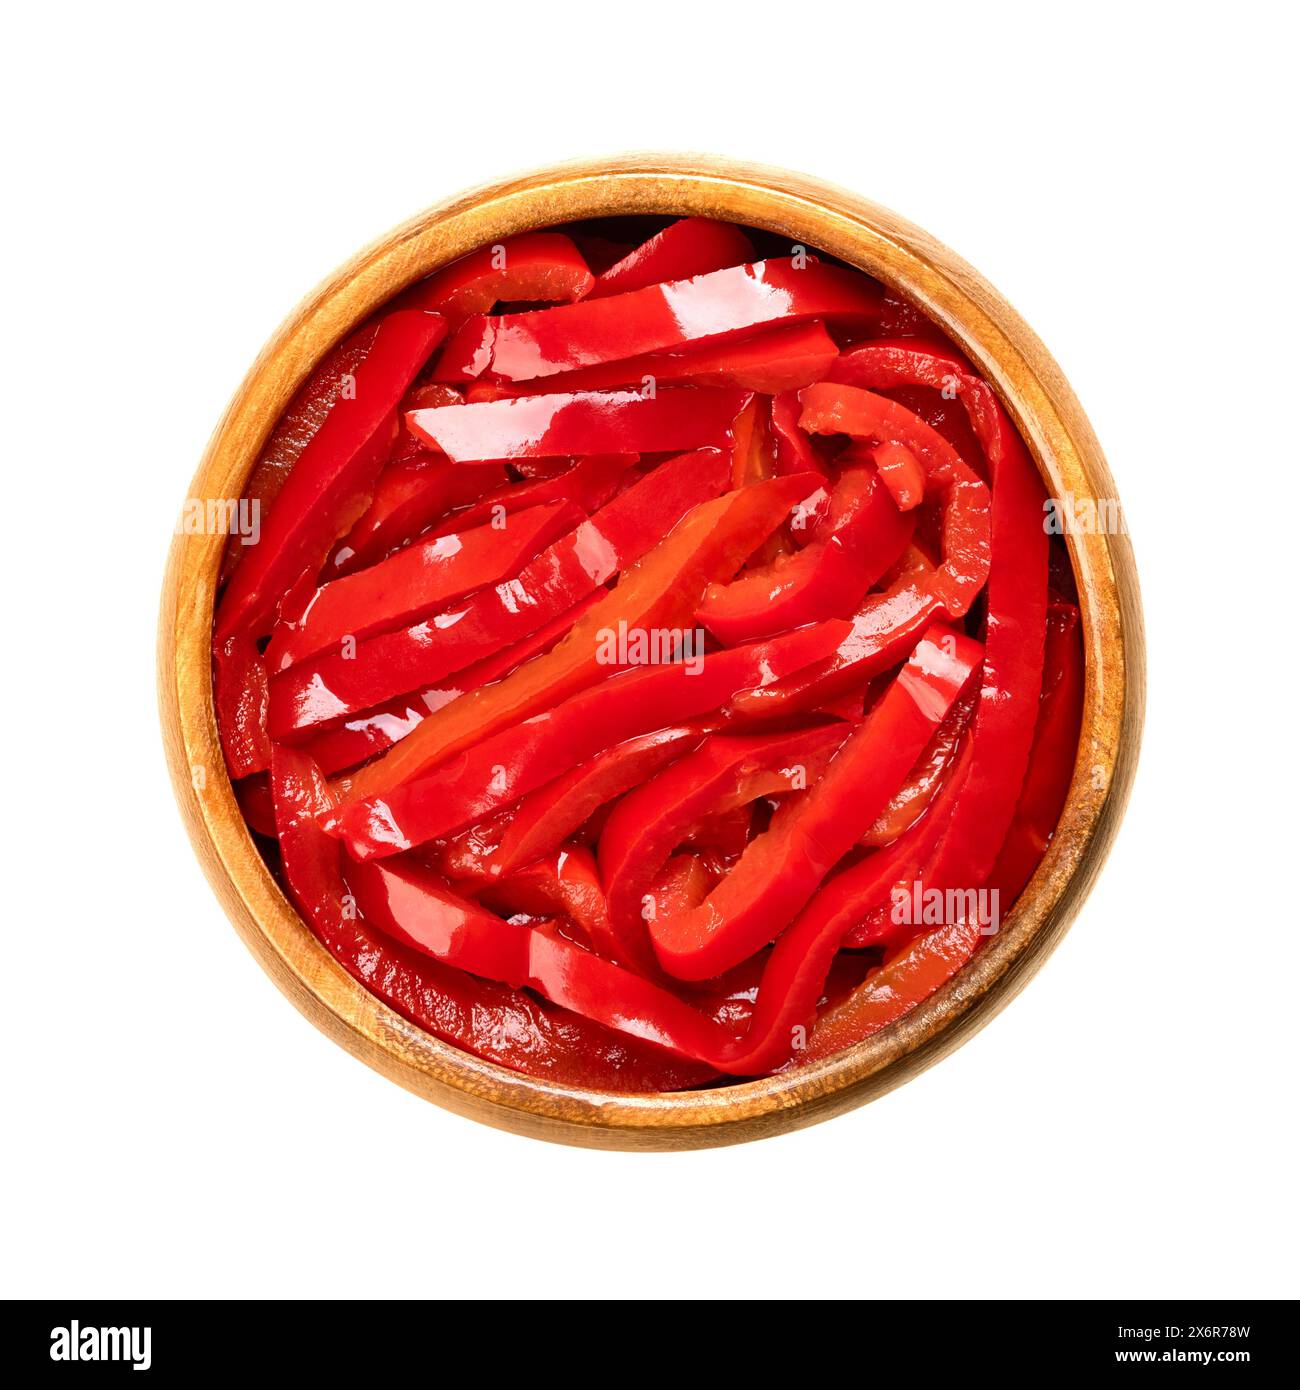 Salat aus rotem Pfeffer, eingelegte rote Paprikastreifen, in einer Holzschale. Paprika-Salat, hergestellt aus geschnittenen, süßen Paprika, pasteurisiert und in Essig haltbar gemacht. Stockfoto